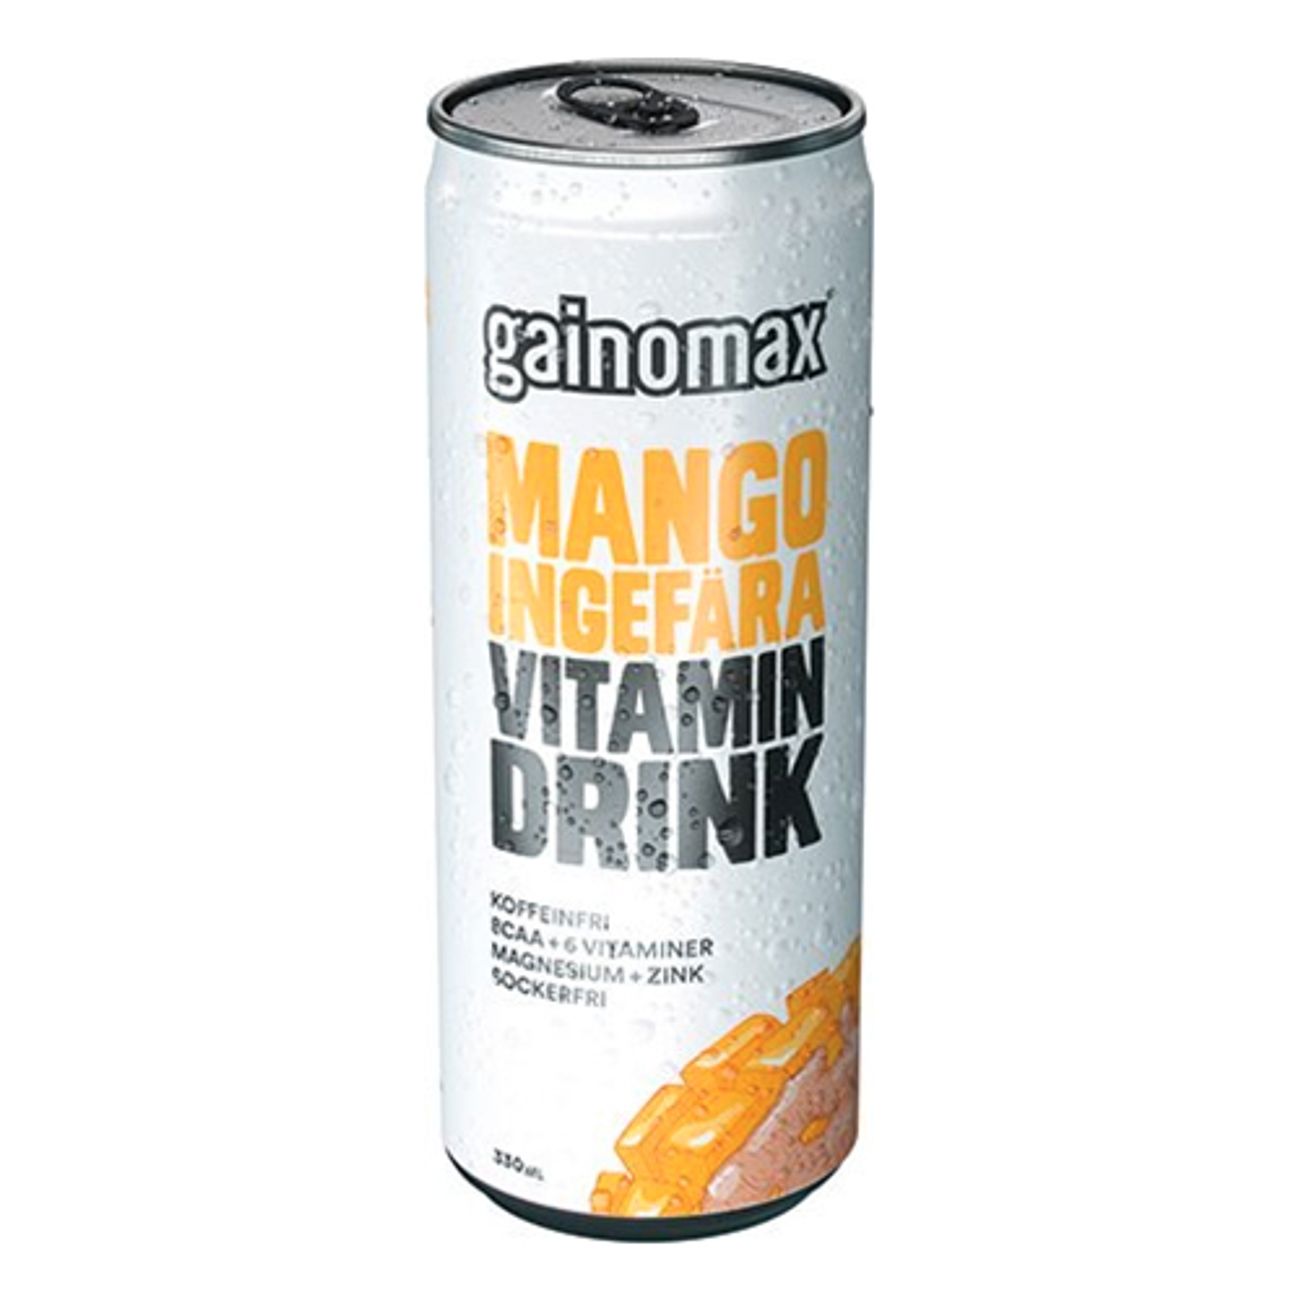 gainomax-mangoingefara-1